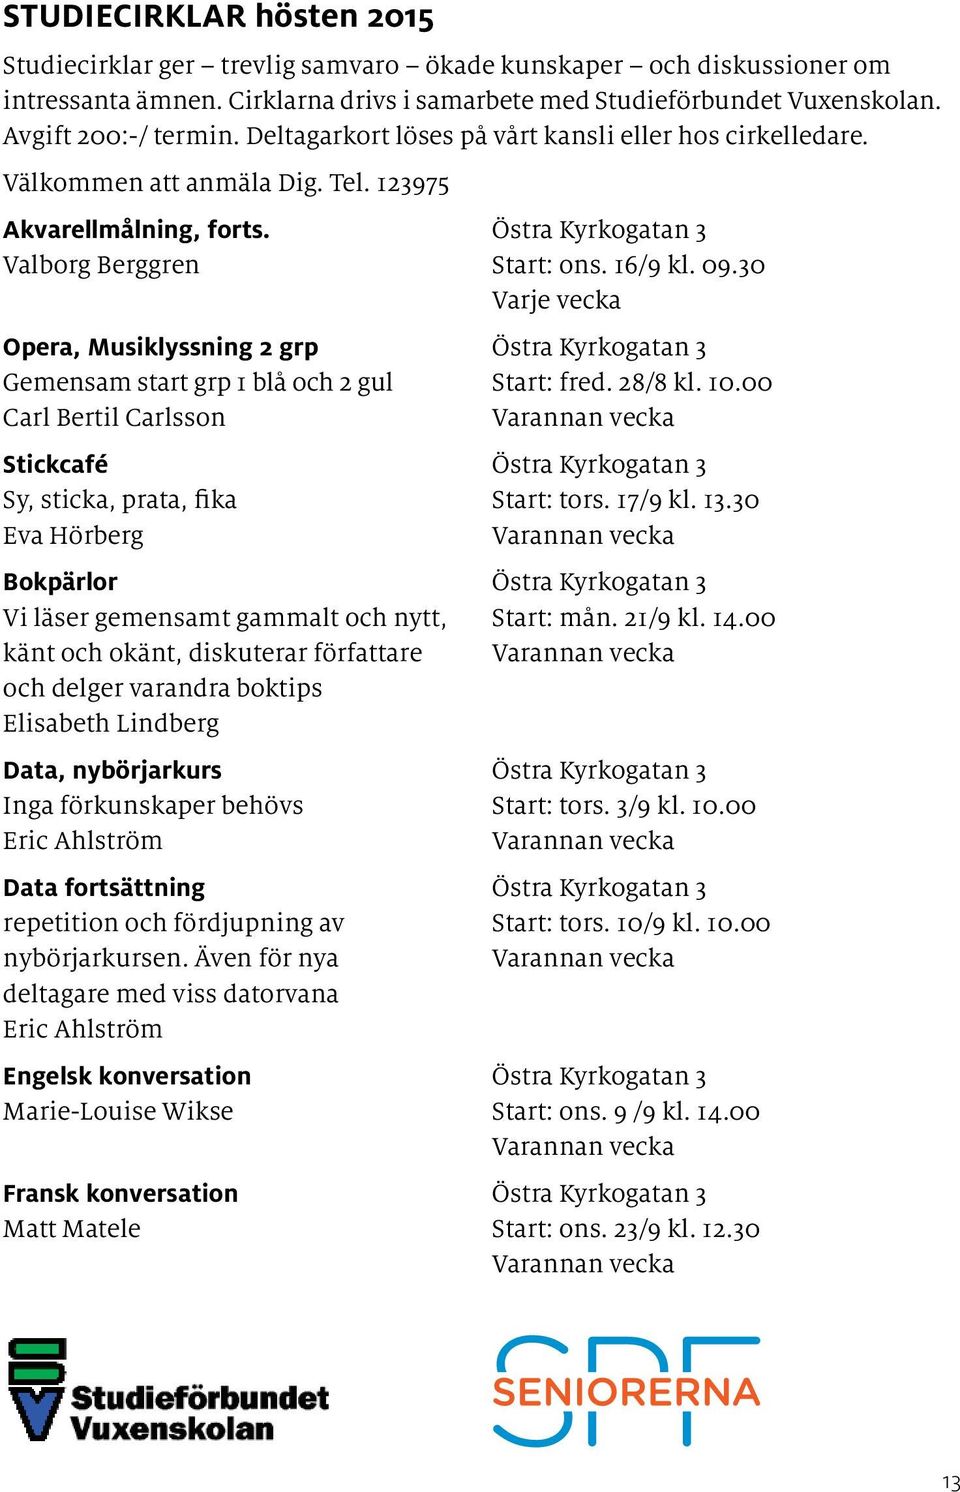 30 Varje vecka Opera, Musiklyssning 2 grp Östra Kyrkogatan 3 Gemensam start grp 1 blå och 2 gul Start: fred. 28/8 kl. 10.